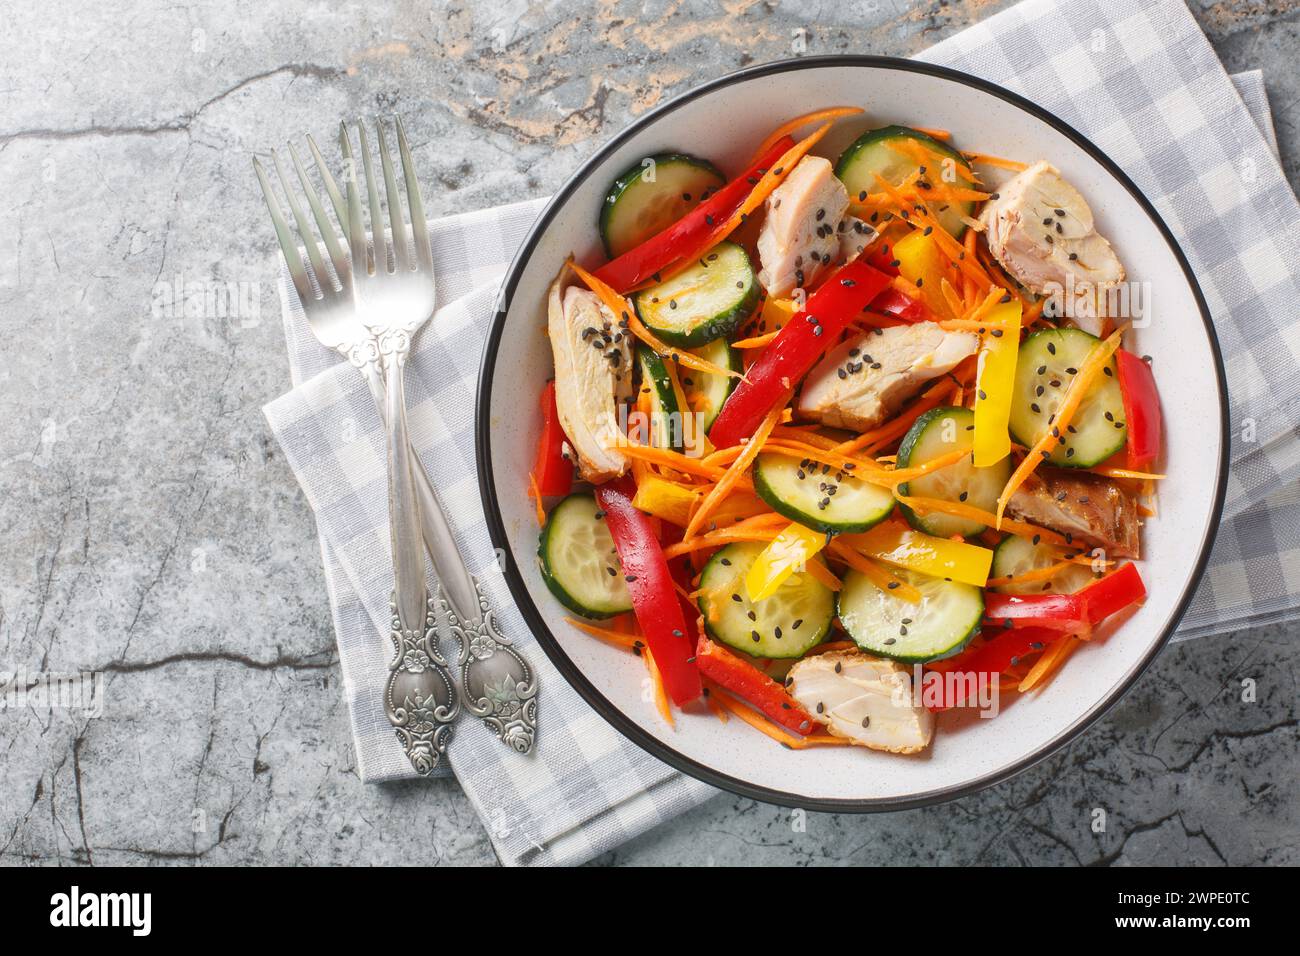 Salade de vitamines avec poulet cuit au four, concombres frais, poivrons, carottes et graines de sésame gros plan dans un bol sur une table en marbre. Vue horizontale de dessus fr Banque D'Images